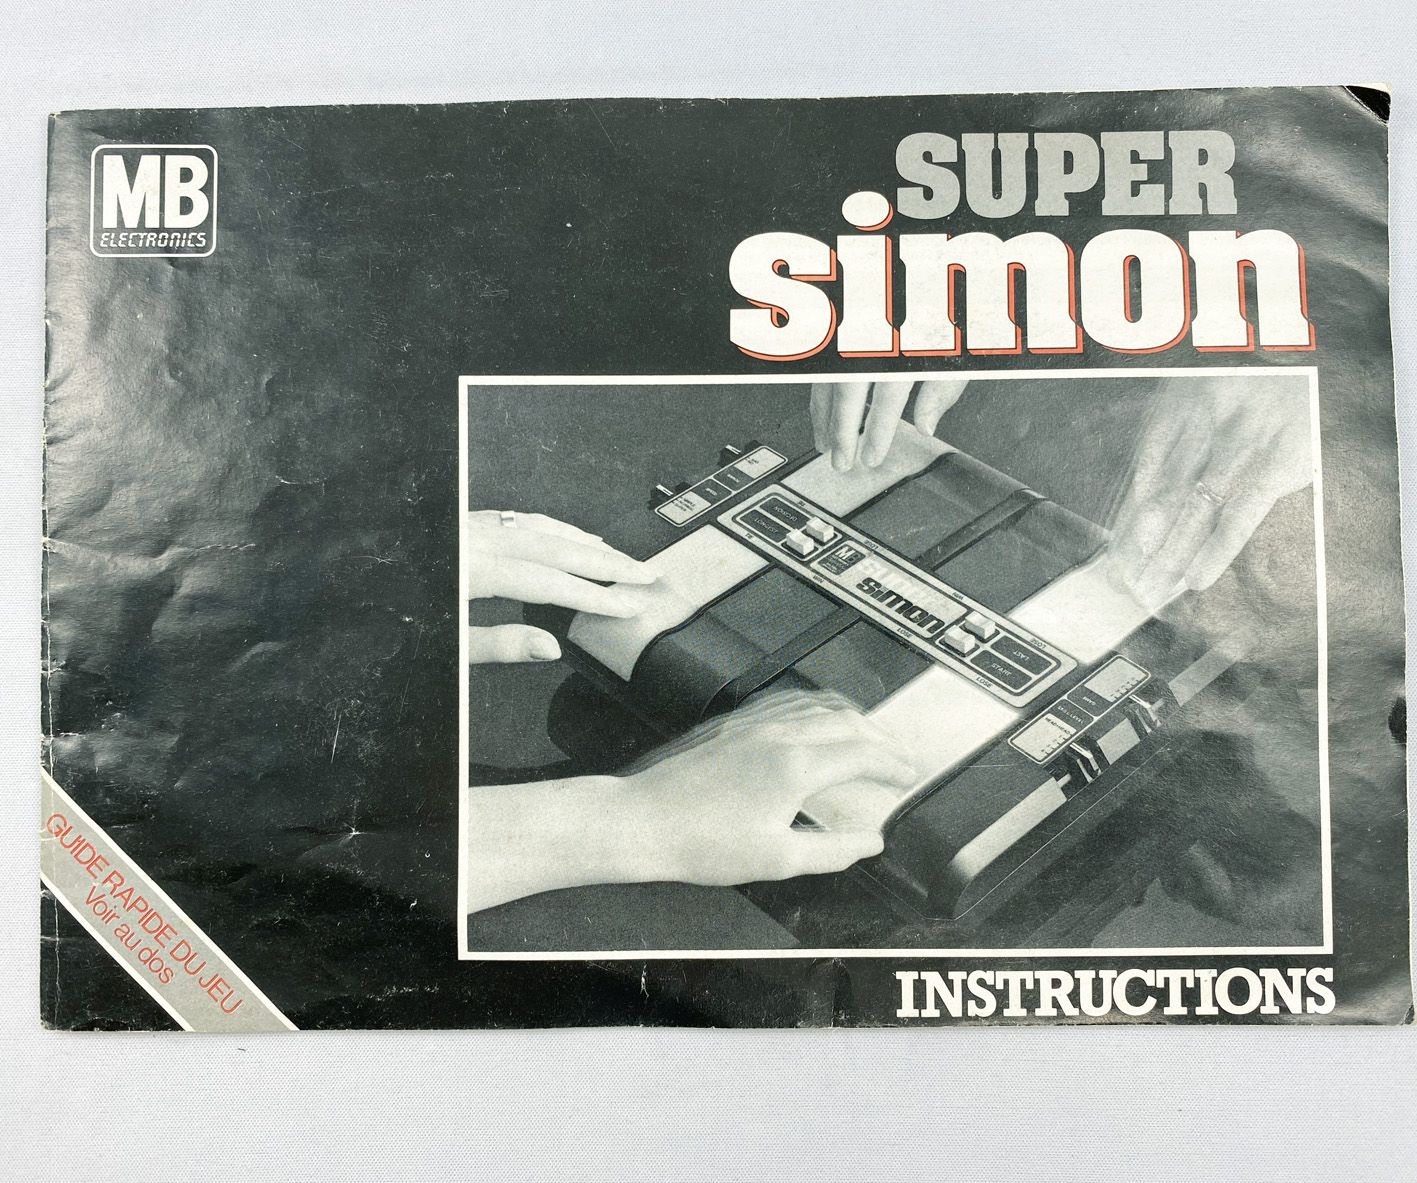 Simon le jeu électronique de MB (1985)